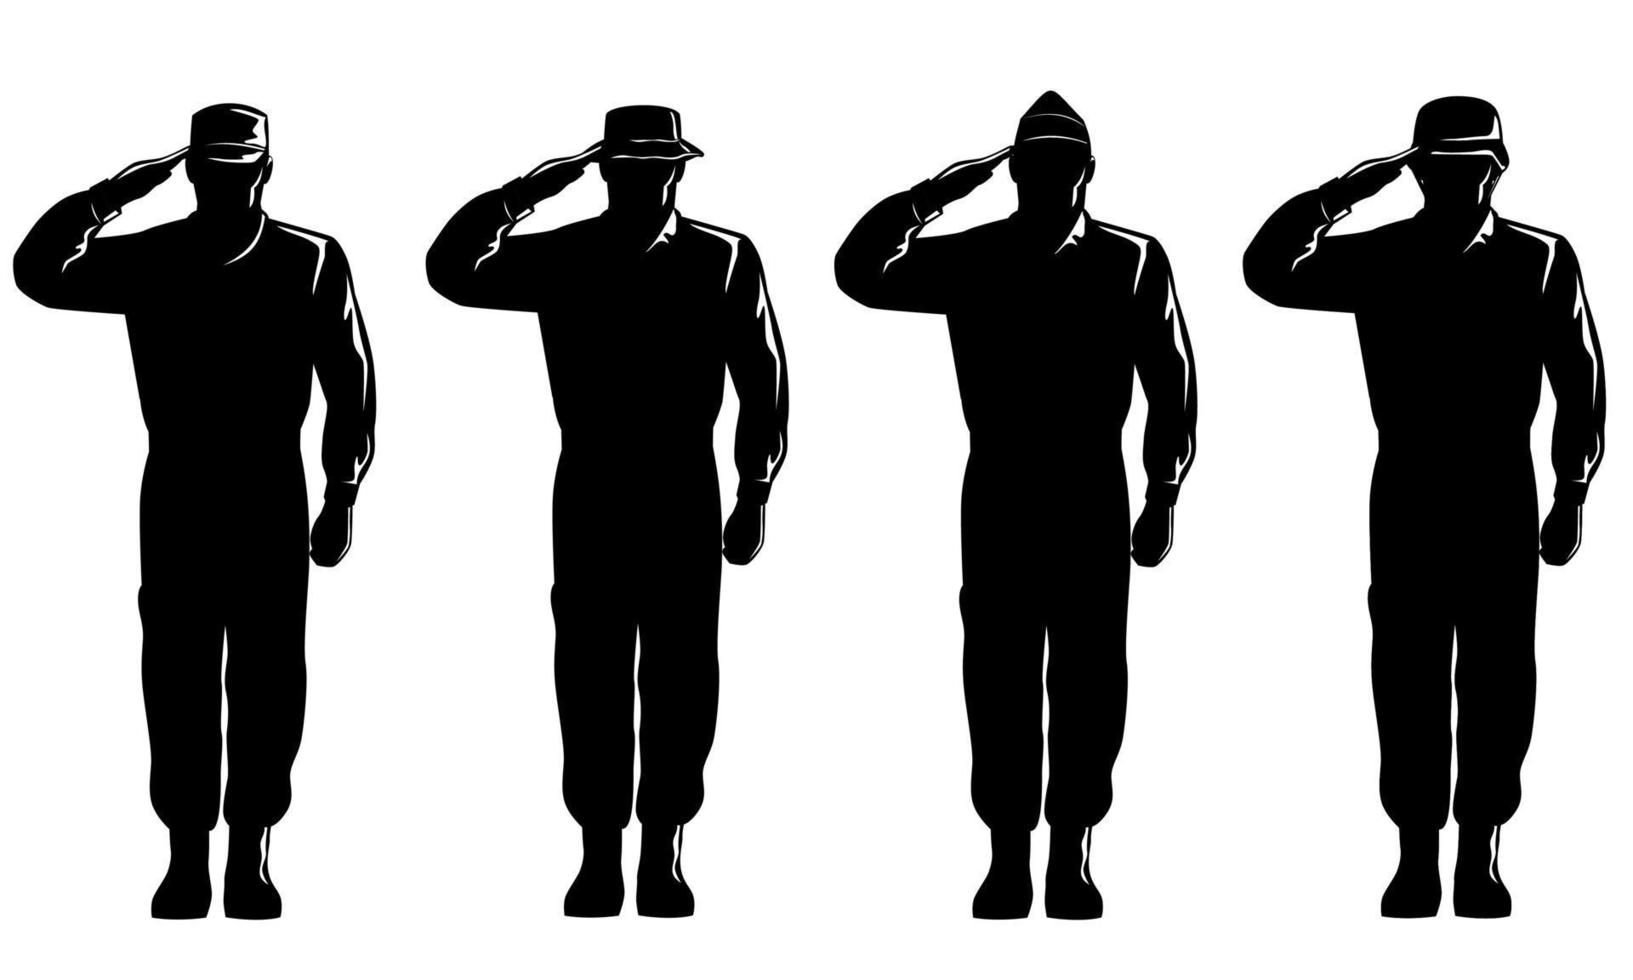 soldat américain soldat militaire personnel silhouette saluant silhouette corps complet isolé rétro vecteur